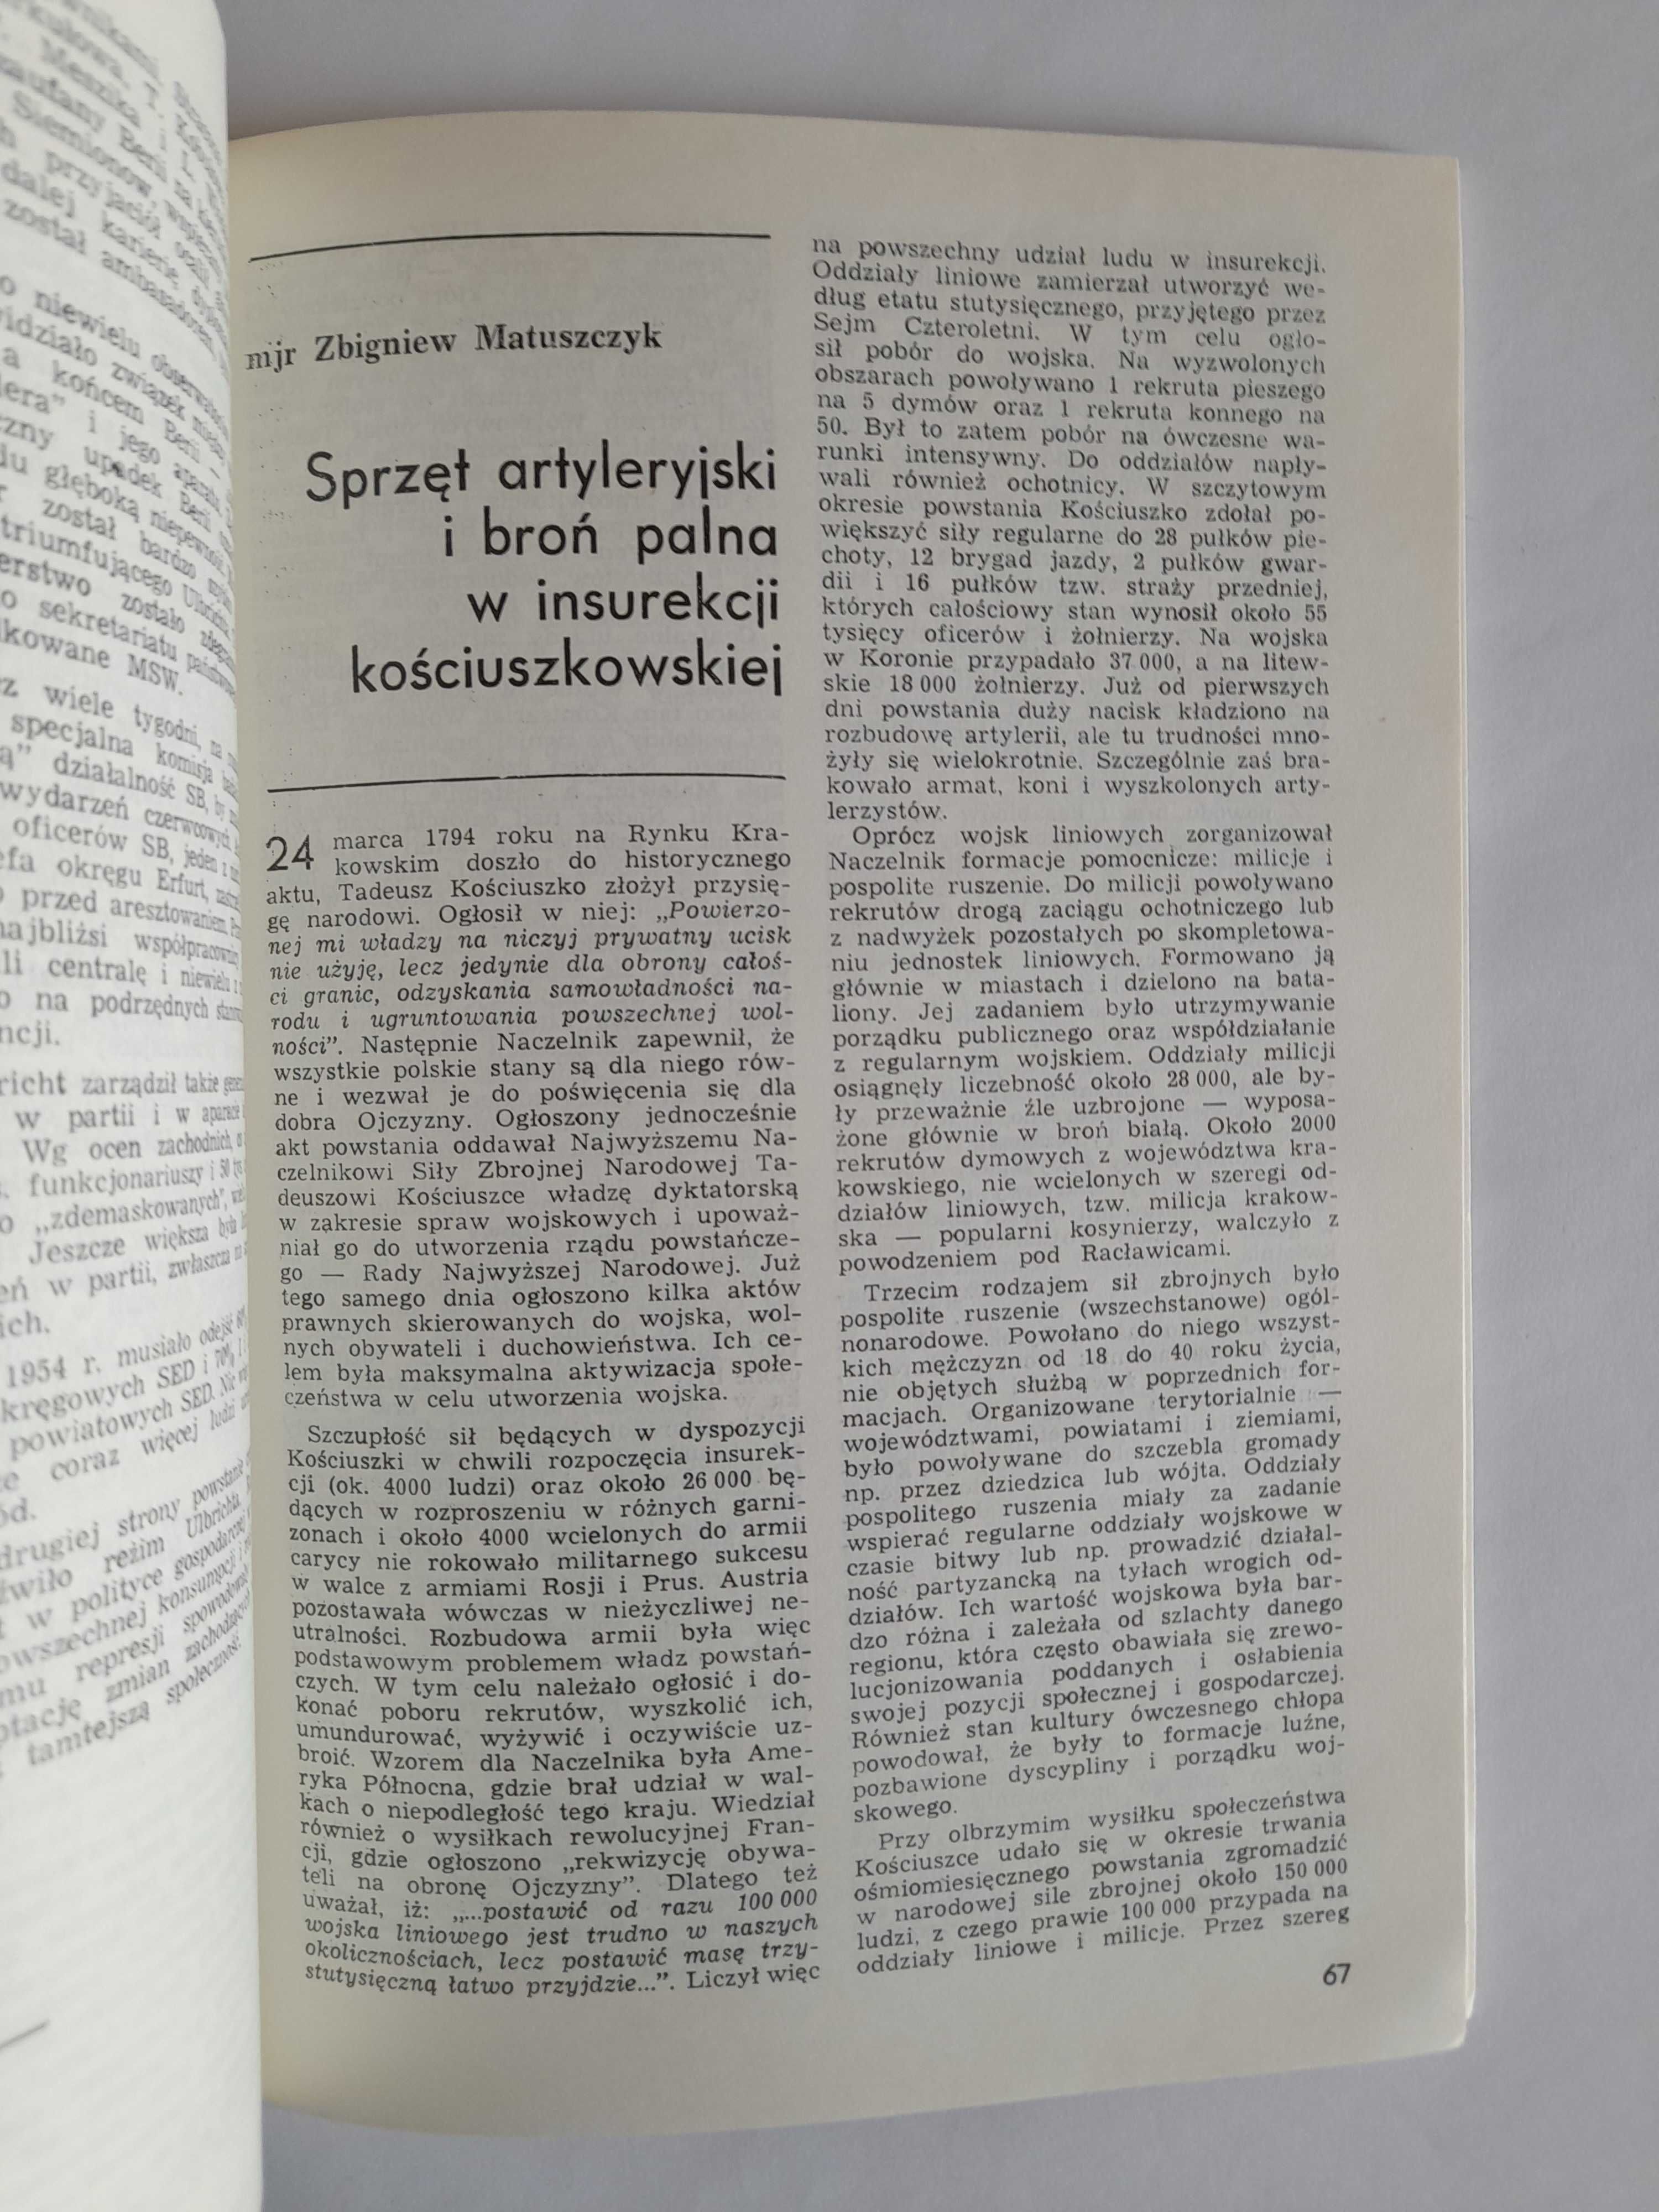 WOJSKO I WYCHOWANIE. Pismo żołnierzy zawodowych WP 4 / 1994